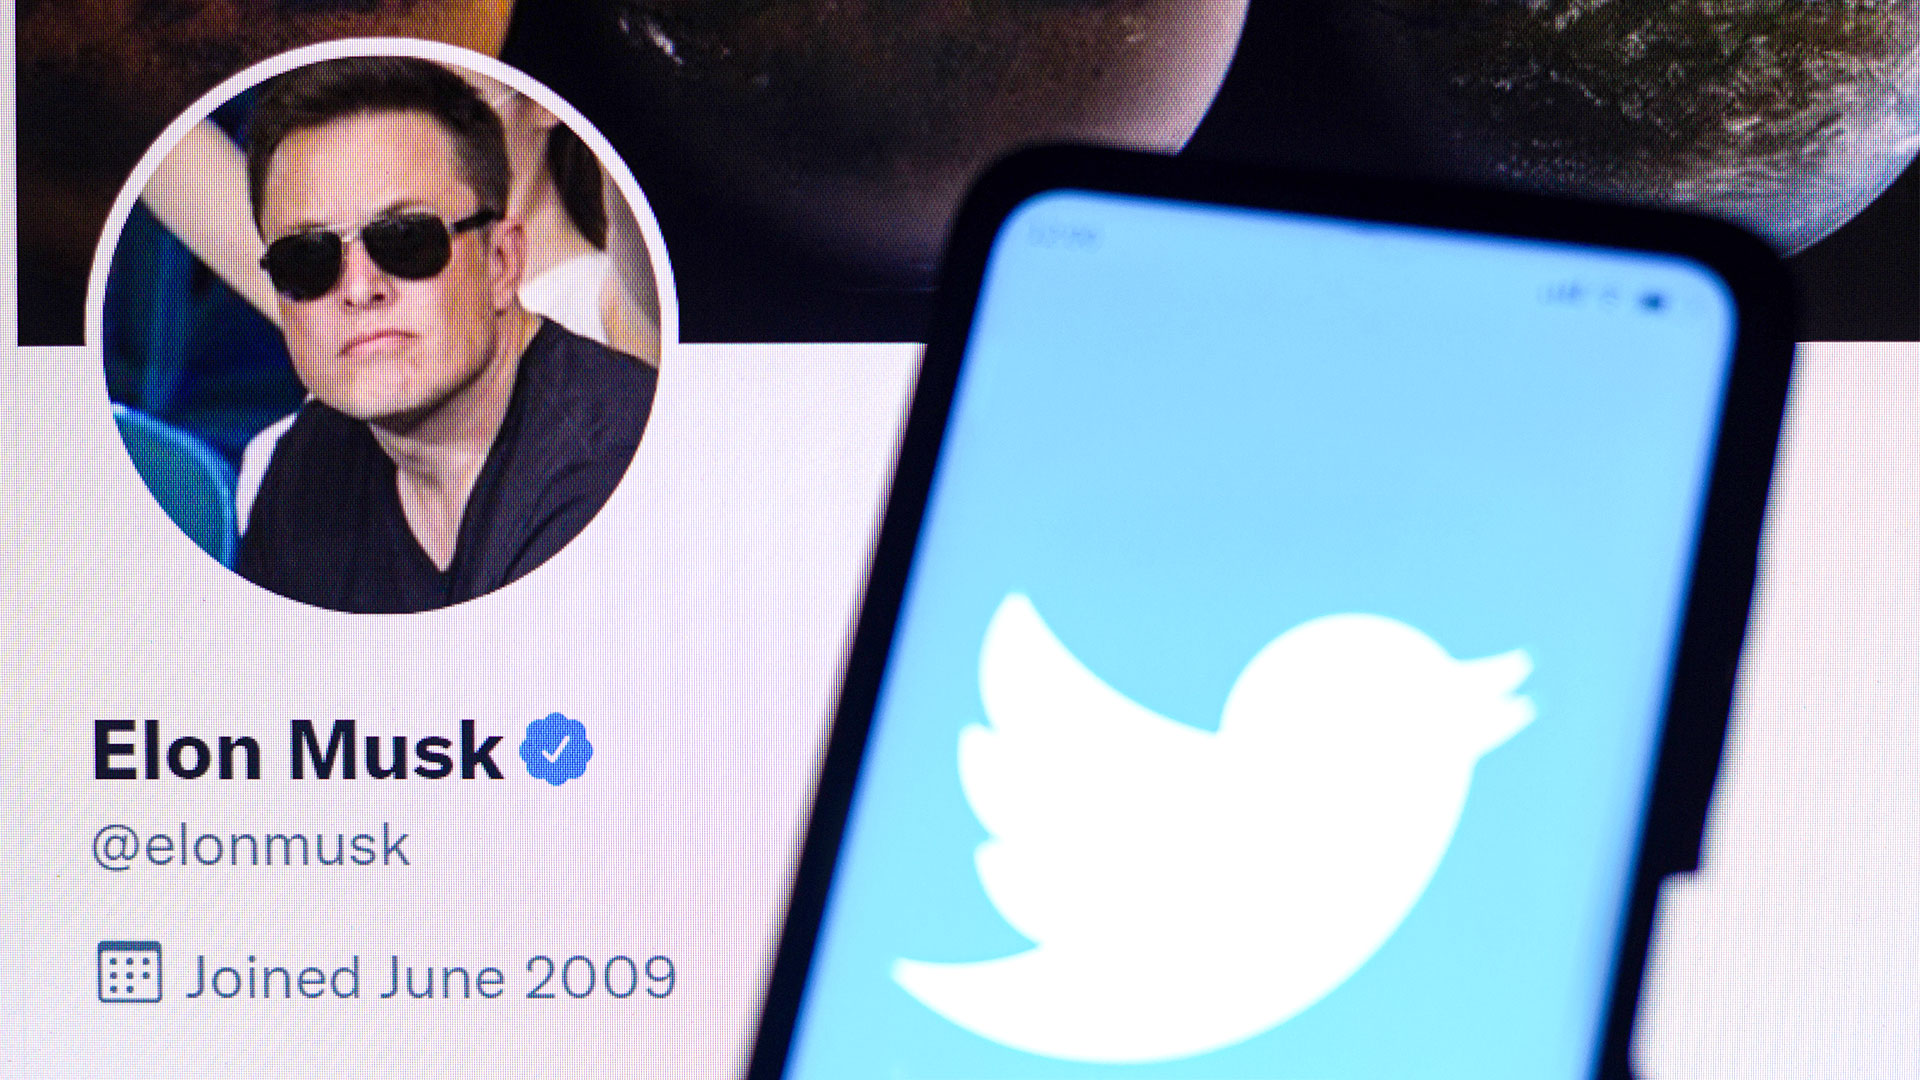 Das Twitter-Logo ist auf einem Smartphone zusammen mit dem offiziellen Twitter-Profil von Elon Musk zu sehen. | picture alliance / ZUMAPRESS.com